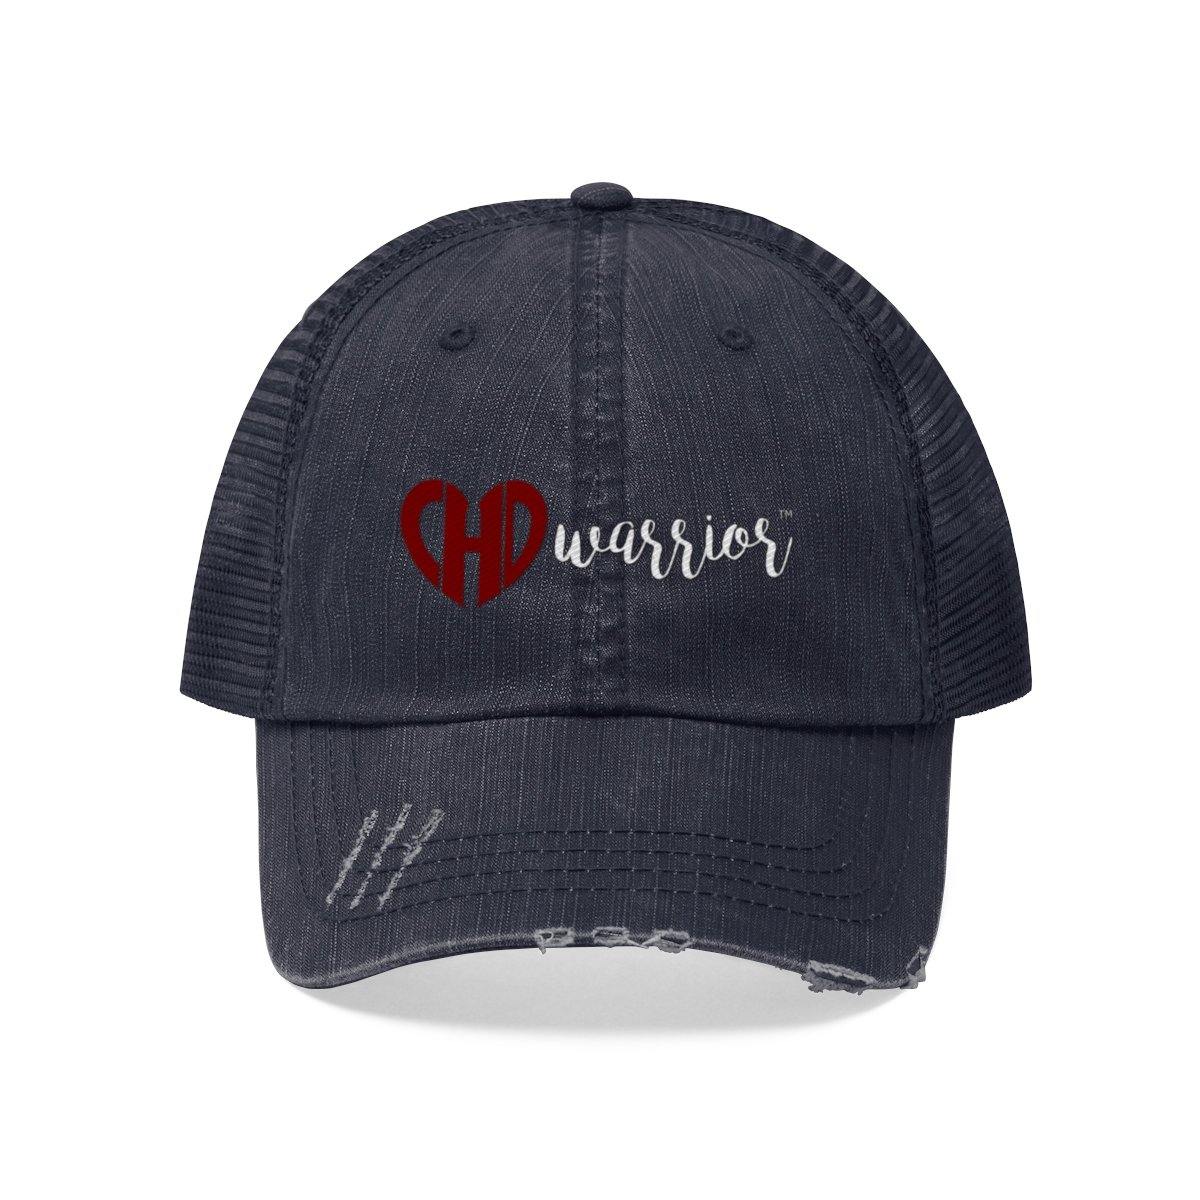 CHD Warrior Trucker Hat – CHD warrior